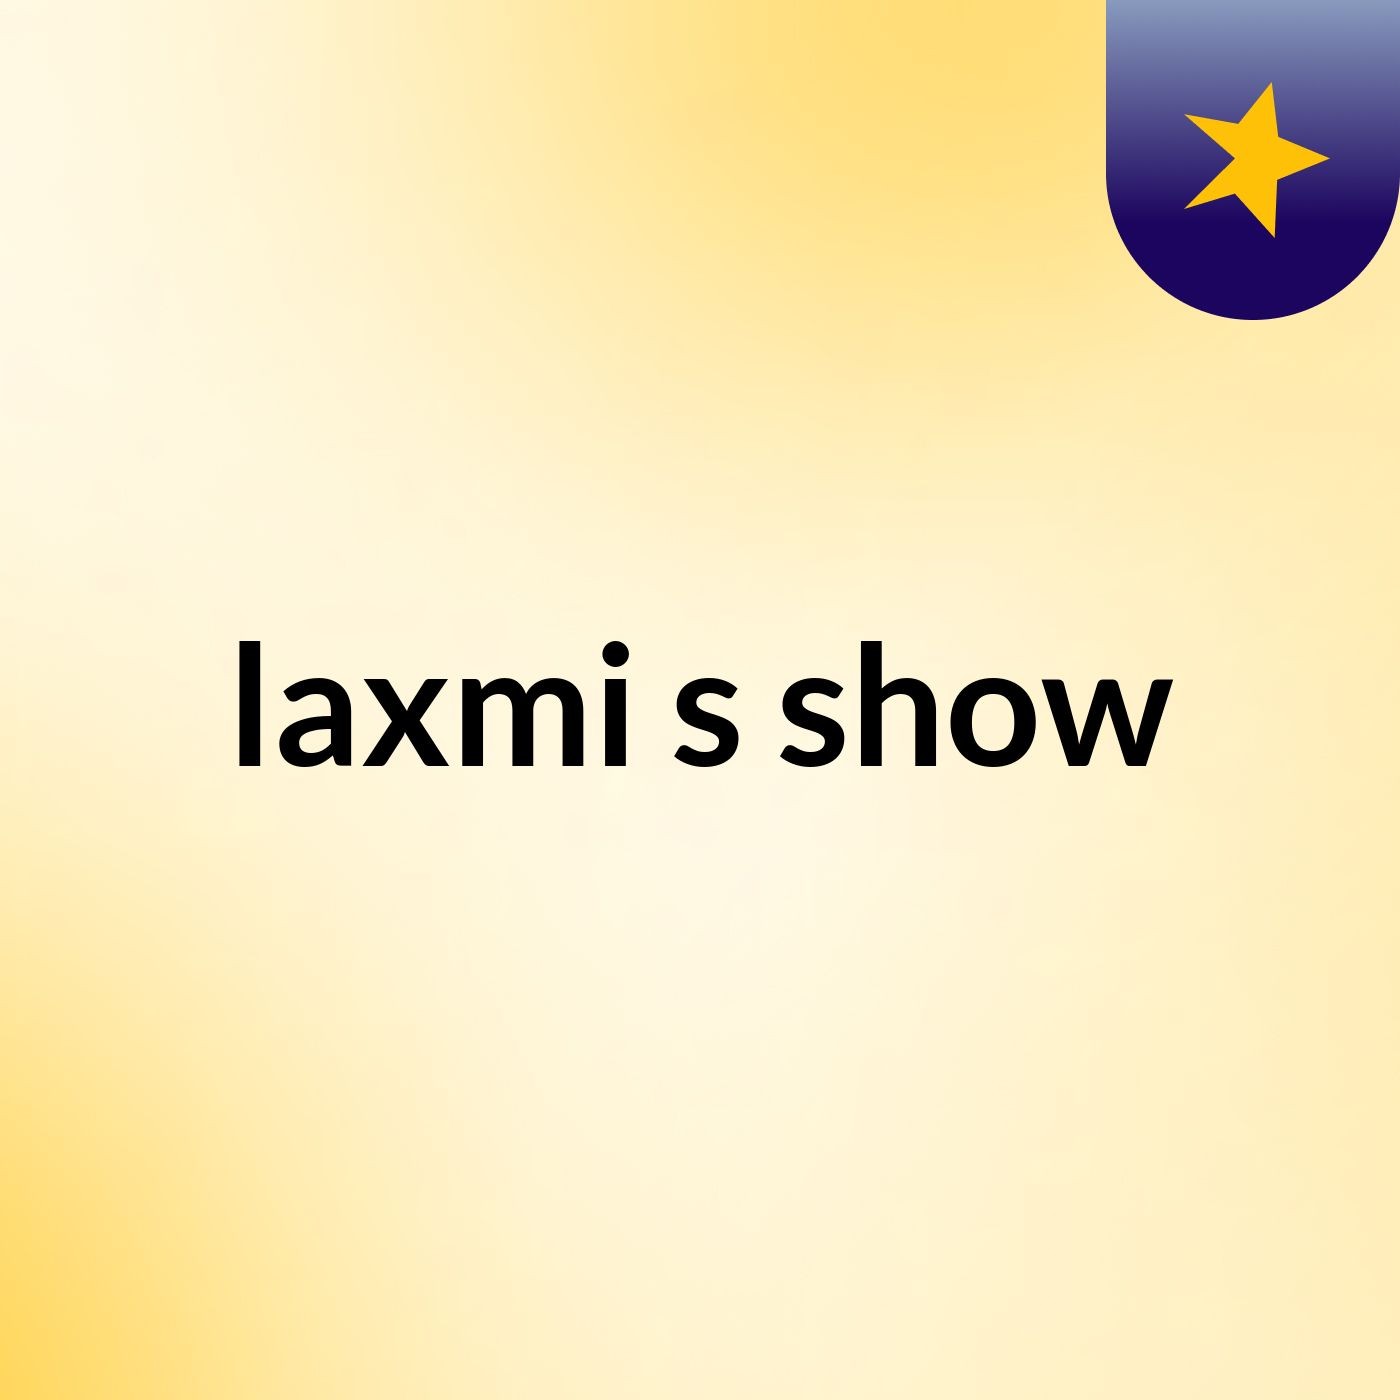 laxmi's show